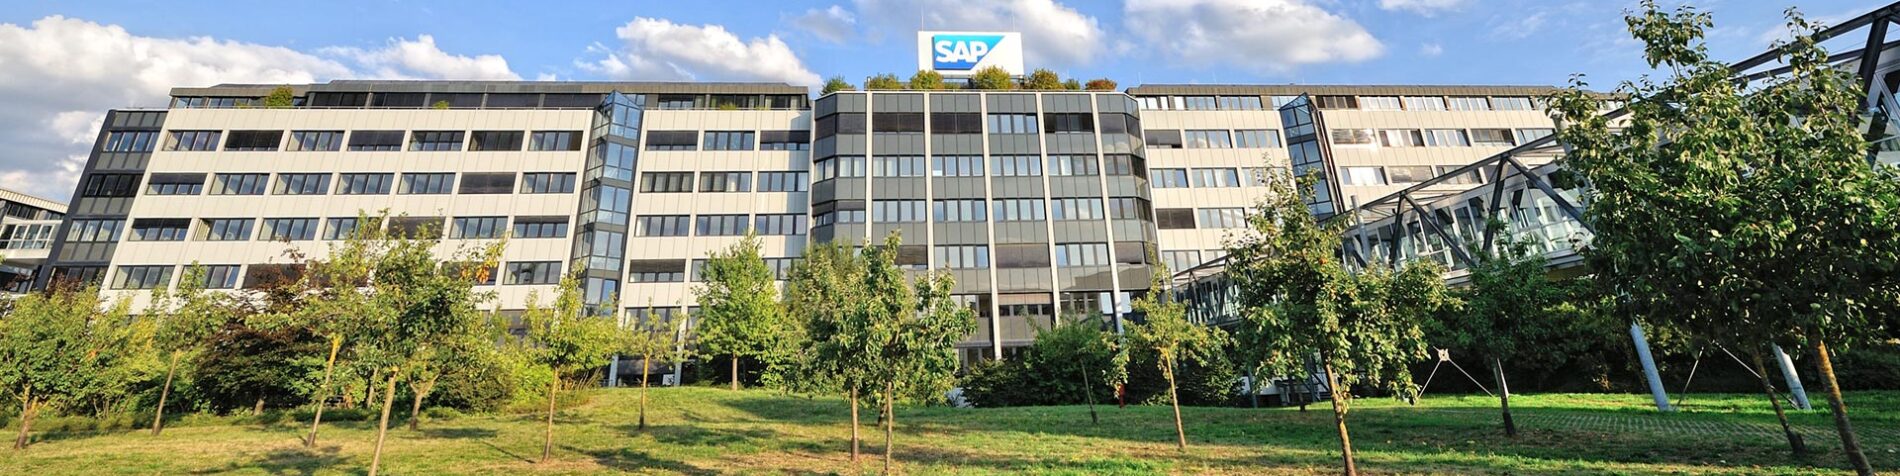 SAP、2023年度第4四半期および通年の業績を発表